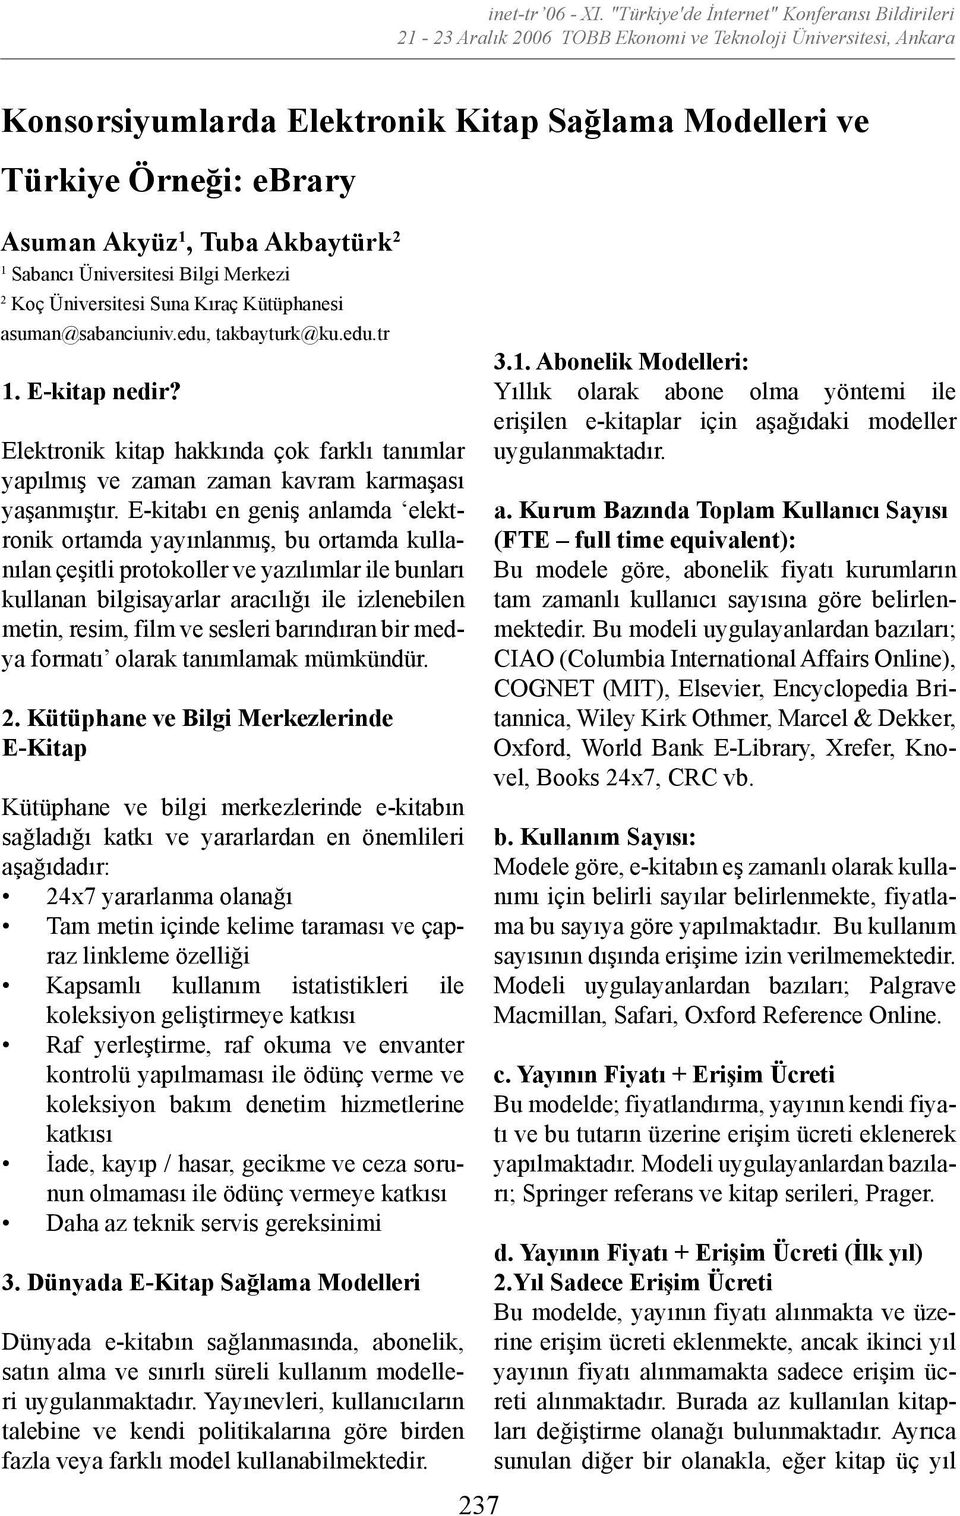 Akyüz 1, Tuba Akbaytürk 2 1 Sabancı Üniversitesi Bilgi Merkezi 2 Koç Üniversitesi Suna Kıraç Kütüphanesi asuman@sabanciuniv.edu, takbayturk@ku.edu.tr 1. E-kitap nedir?